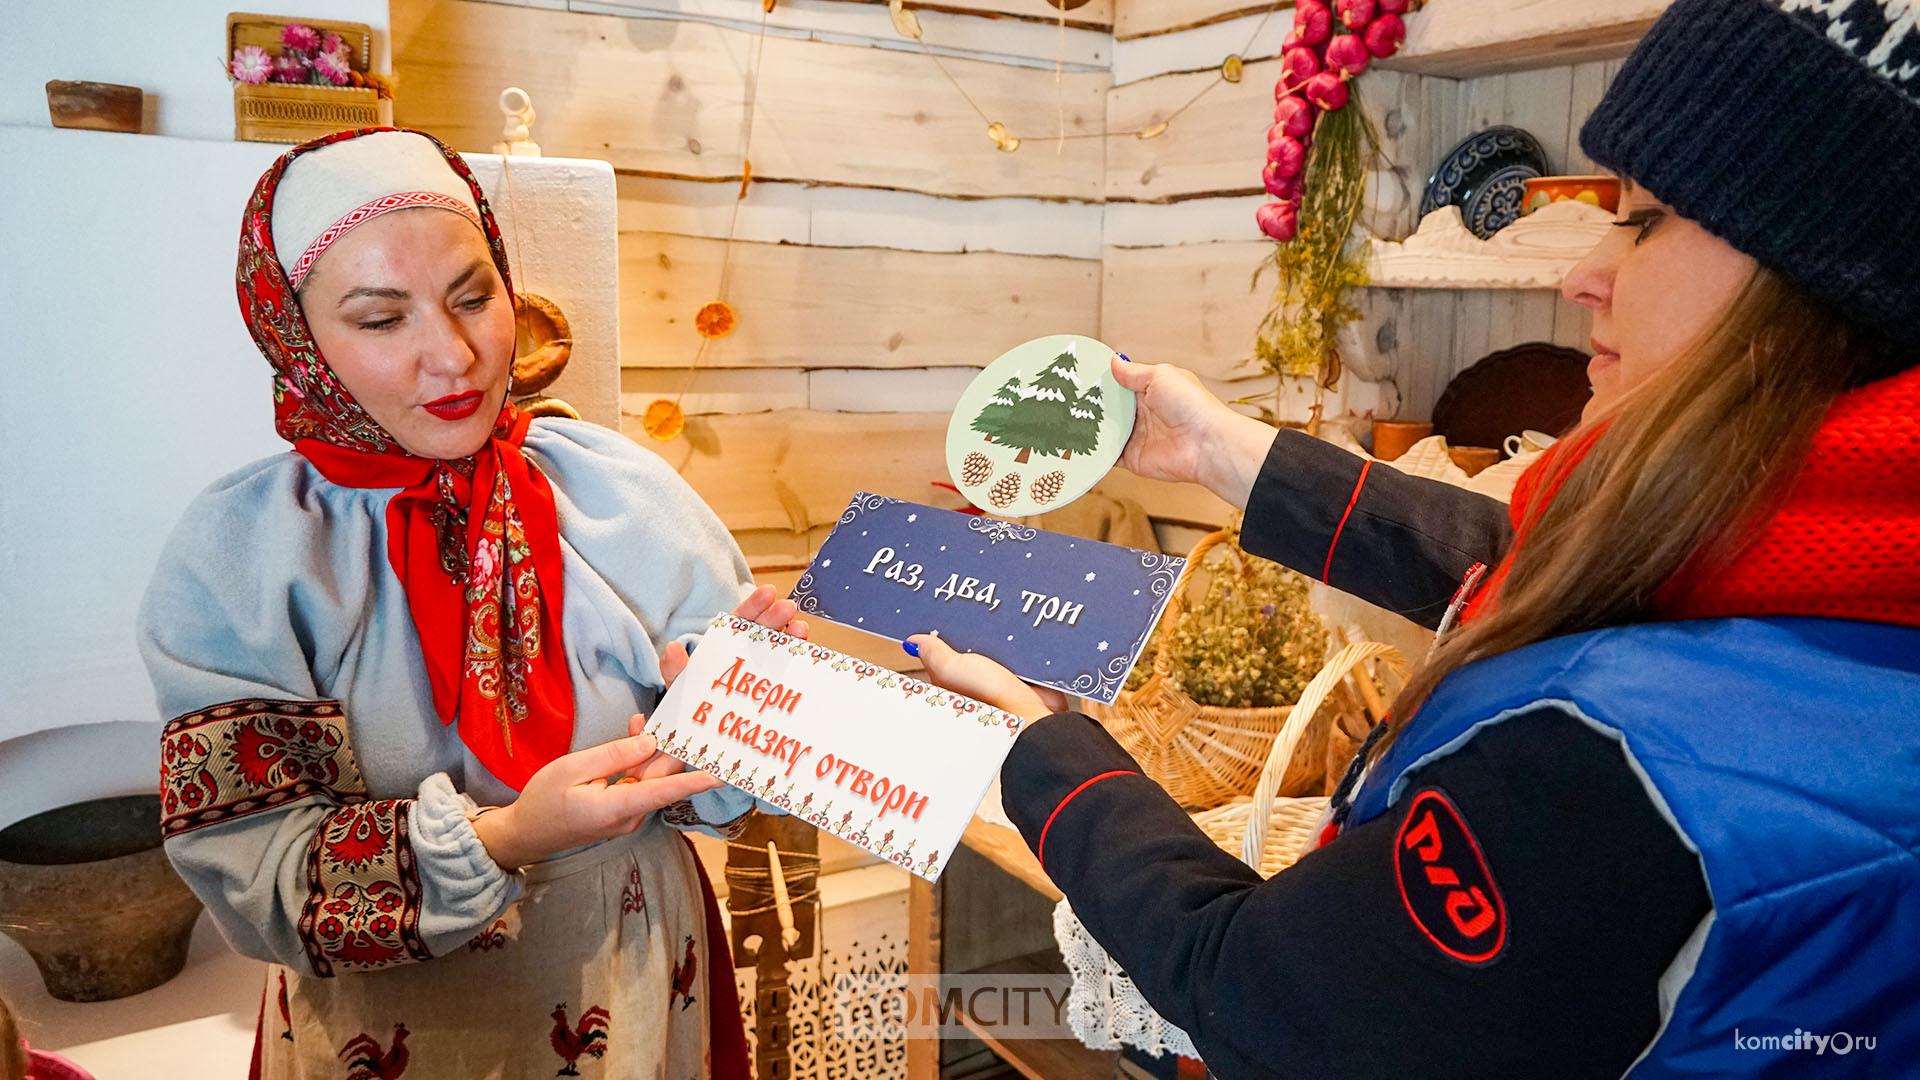  Комсомольчане побывали в передвижной резиденции Деда Мороза